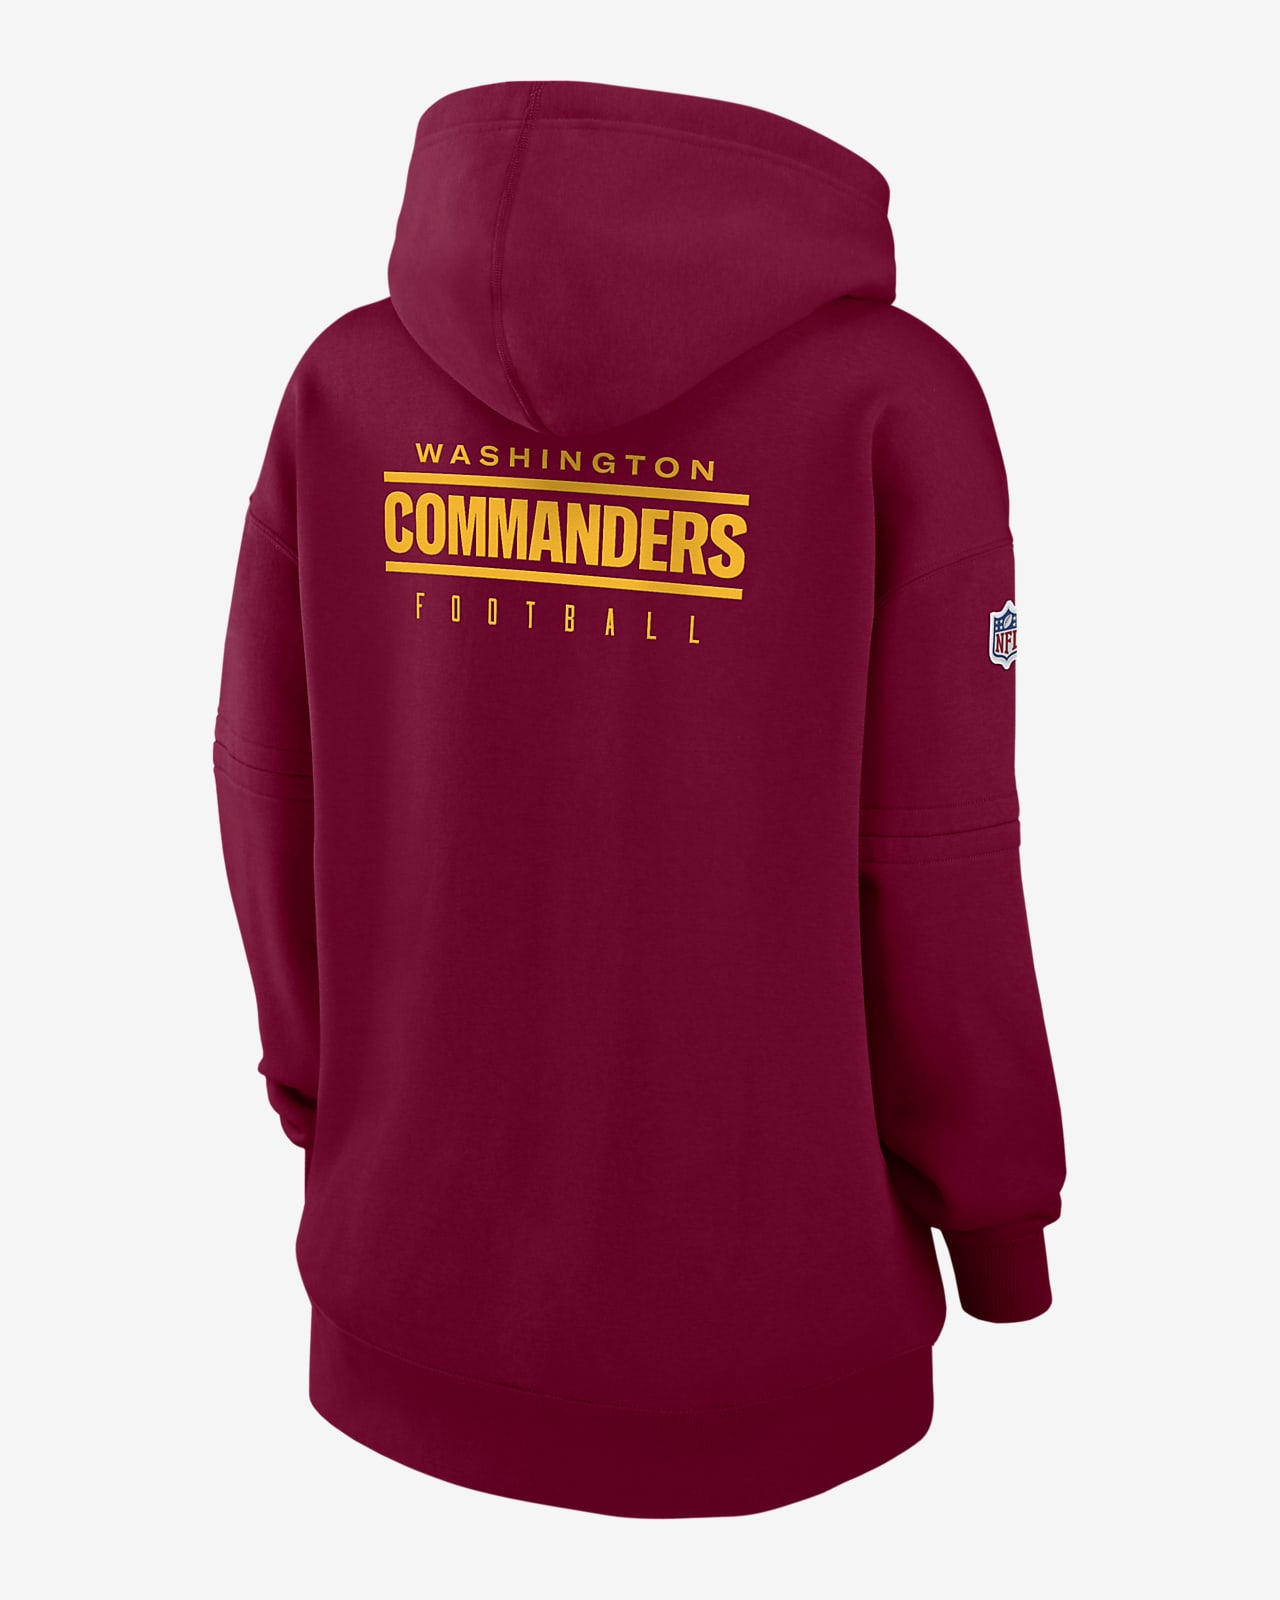 commanders nike hoodie